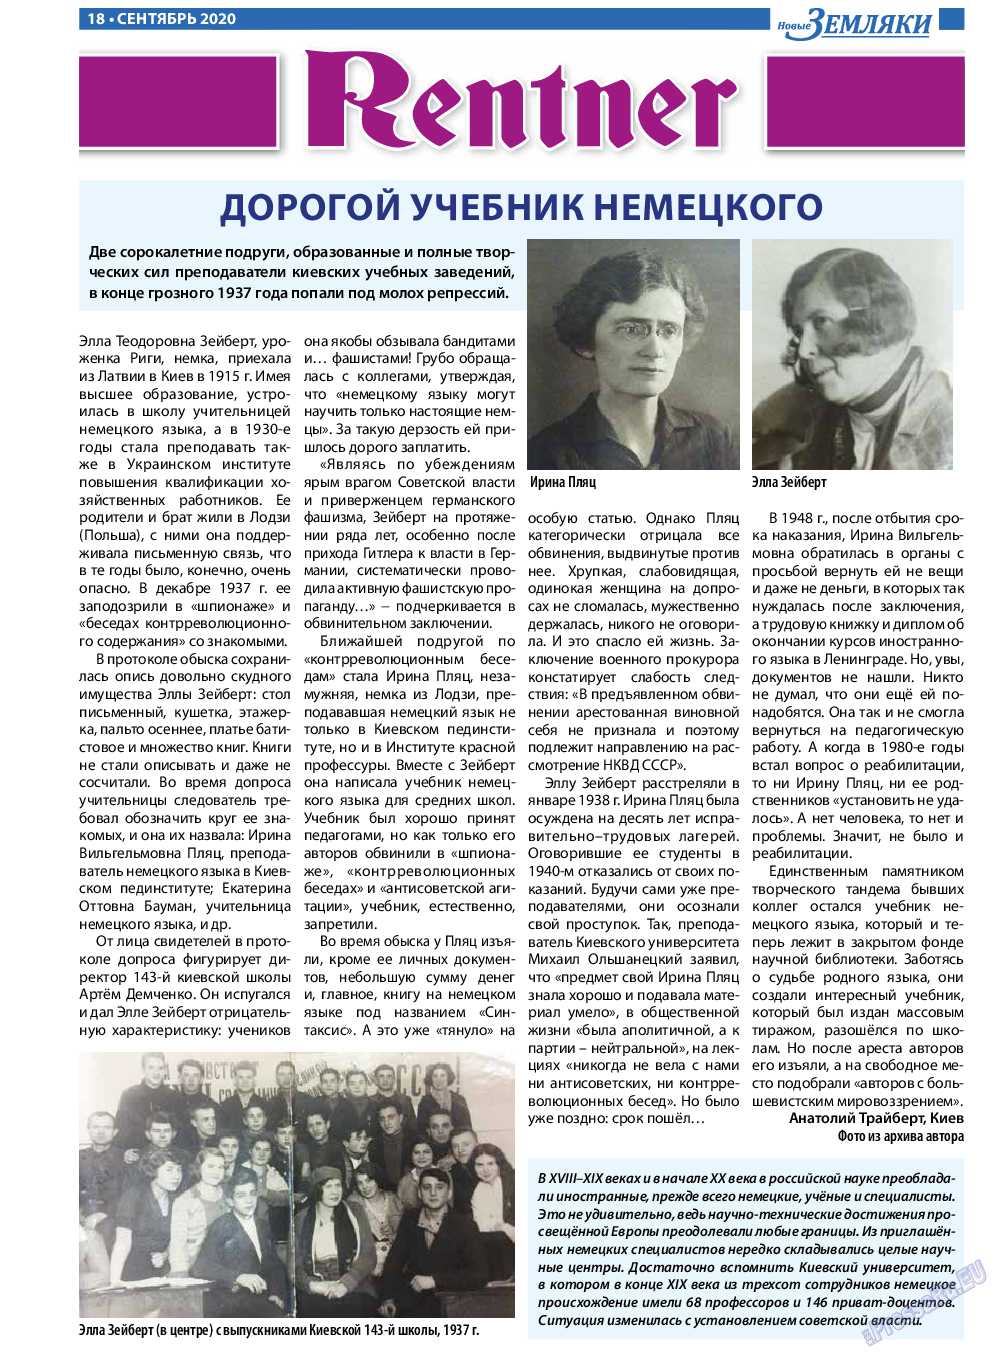 Новые Земляки, газета. 2020 №9 стр.18